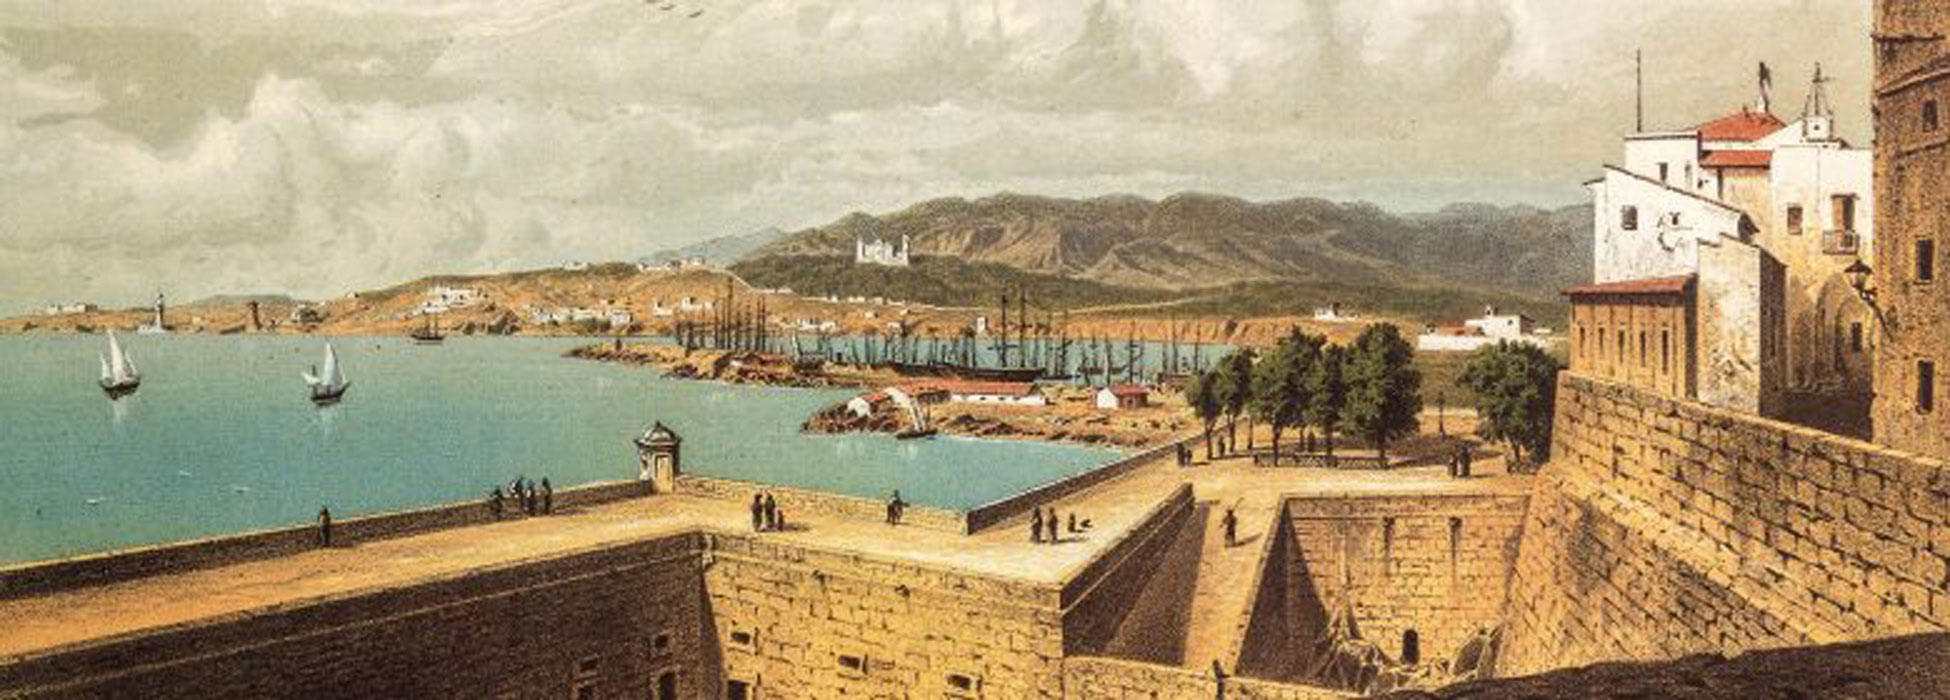 Palma vista pels viatgers del segle XIX